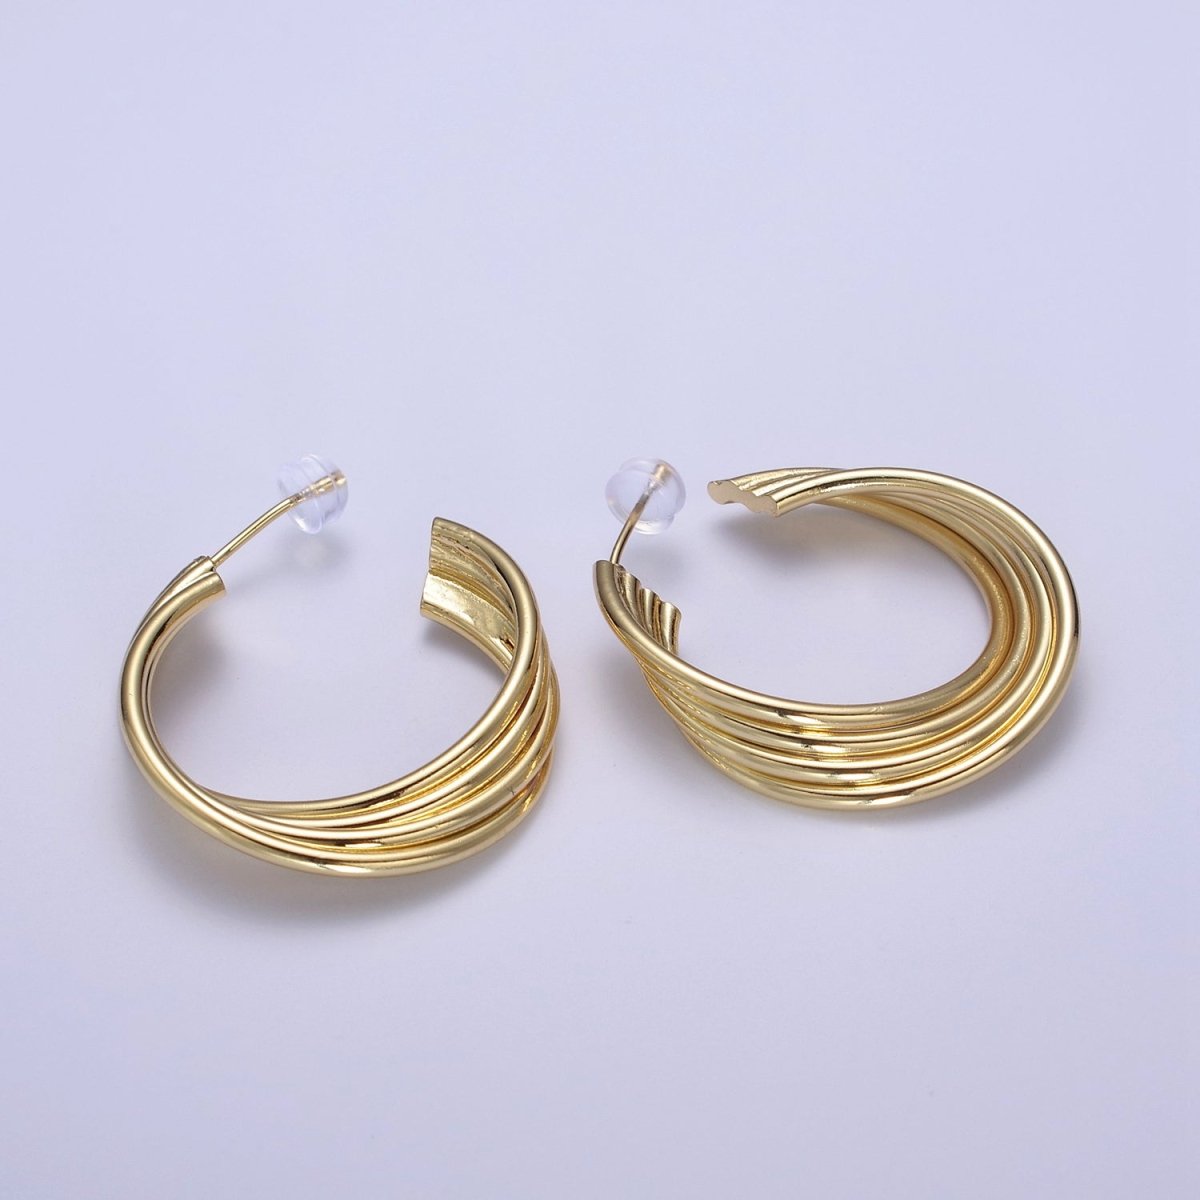 Modern Twist Gold Filled Hoop Earrings, Texture Earrings, Hypoallergenic Earrings, Dainty Bold Style Hoop, Statement Stacking Hoops T-284 - DLUXCA